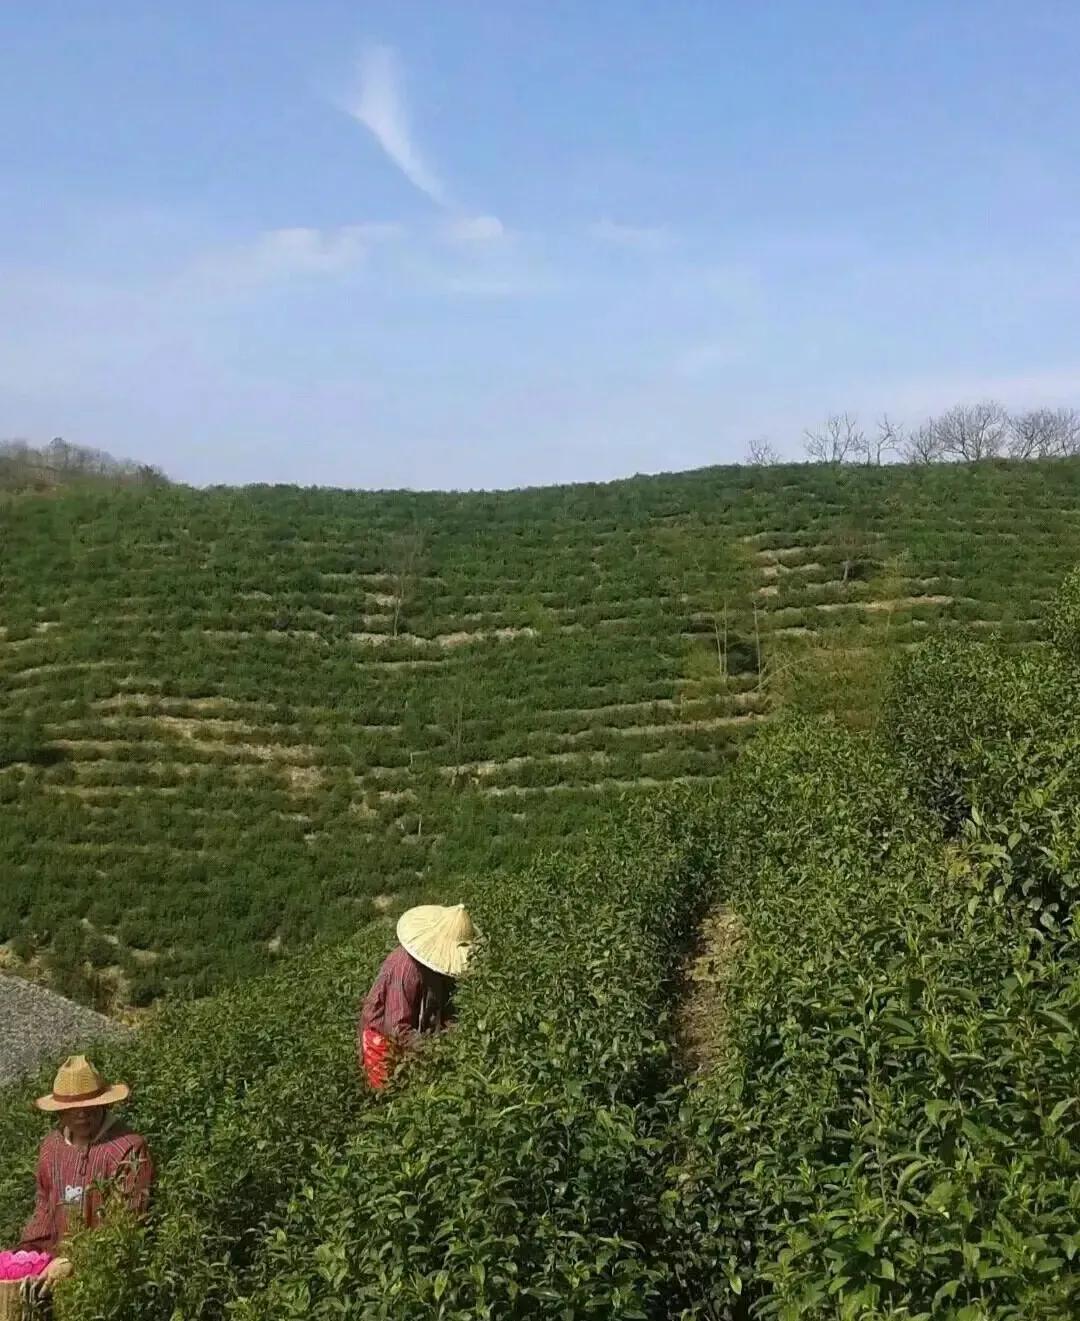 淡茶养生：西湖龙井茶（绿茶）、斯宅高山茶（绿茶、红茶）